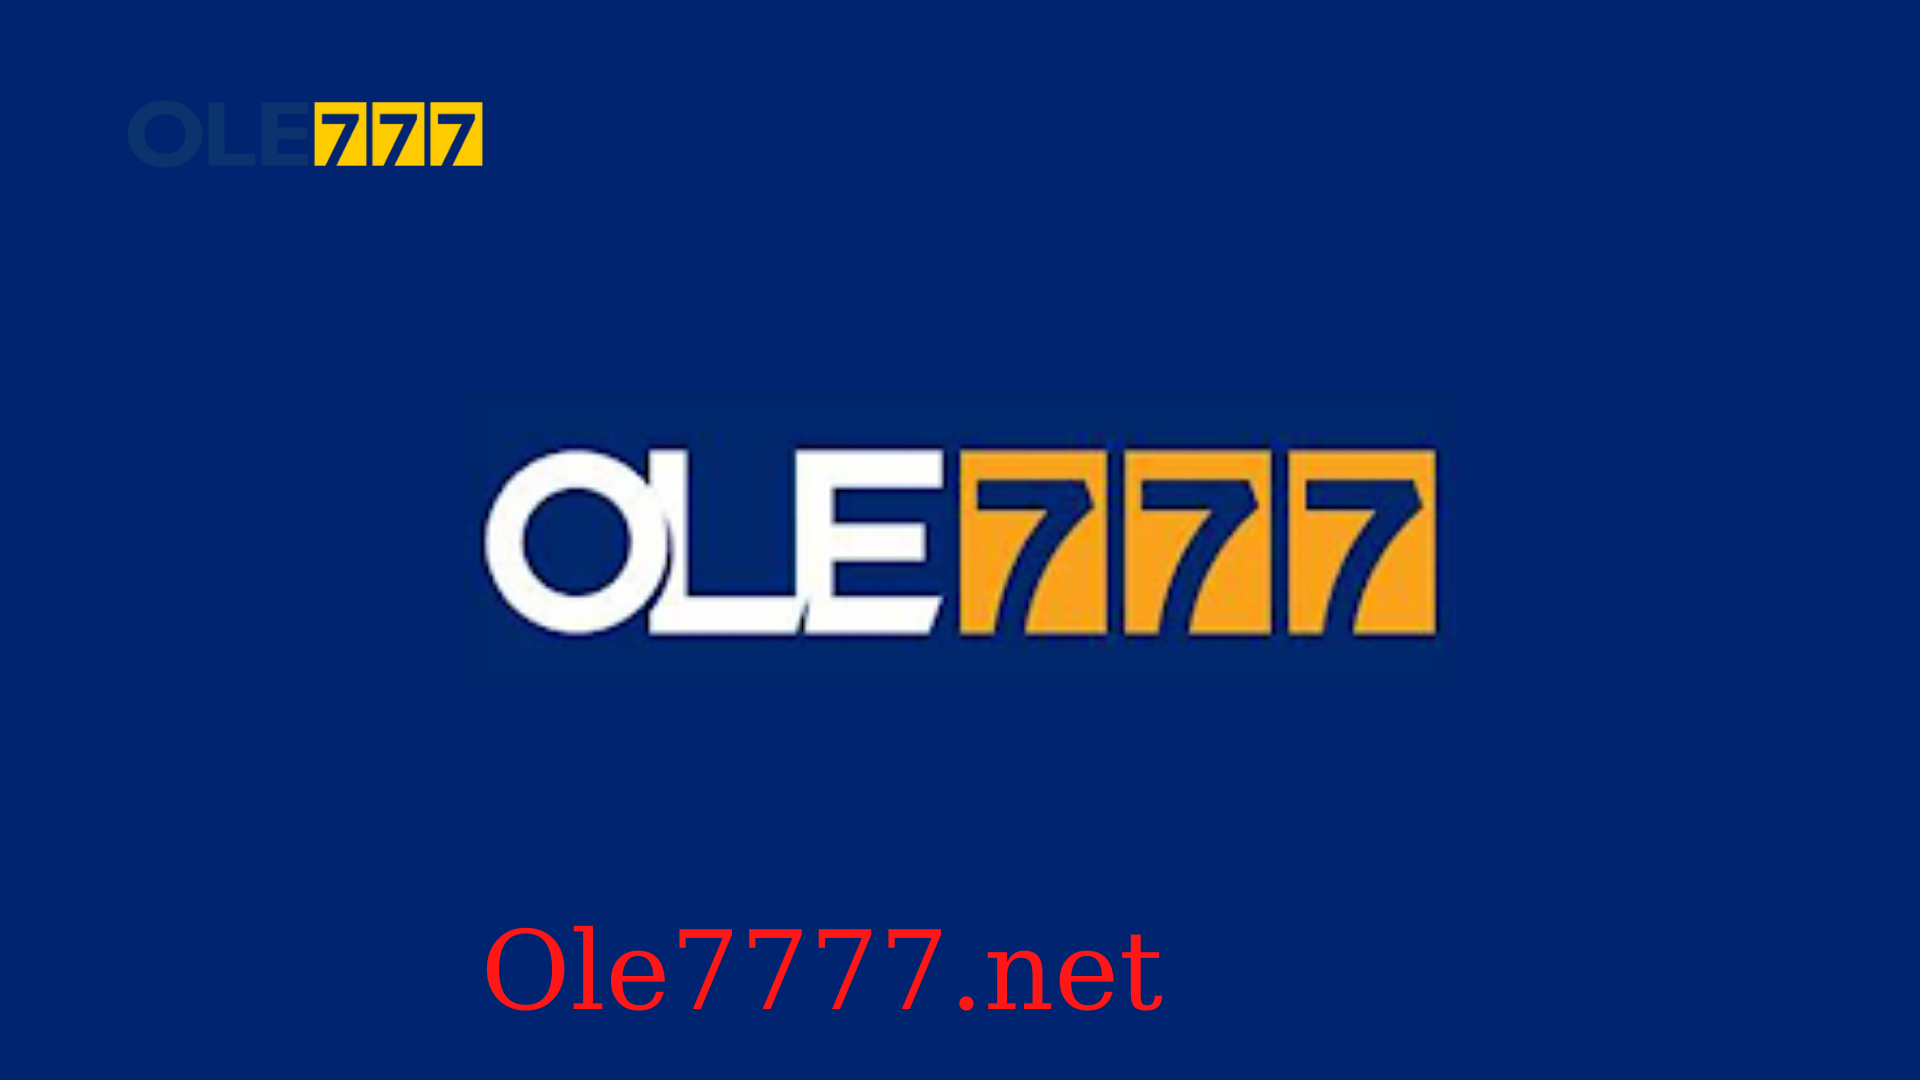 Cùng Ole777 tìm hiểu về các loại hình xổ số